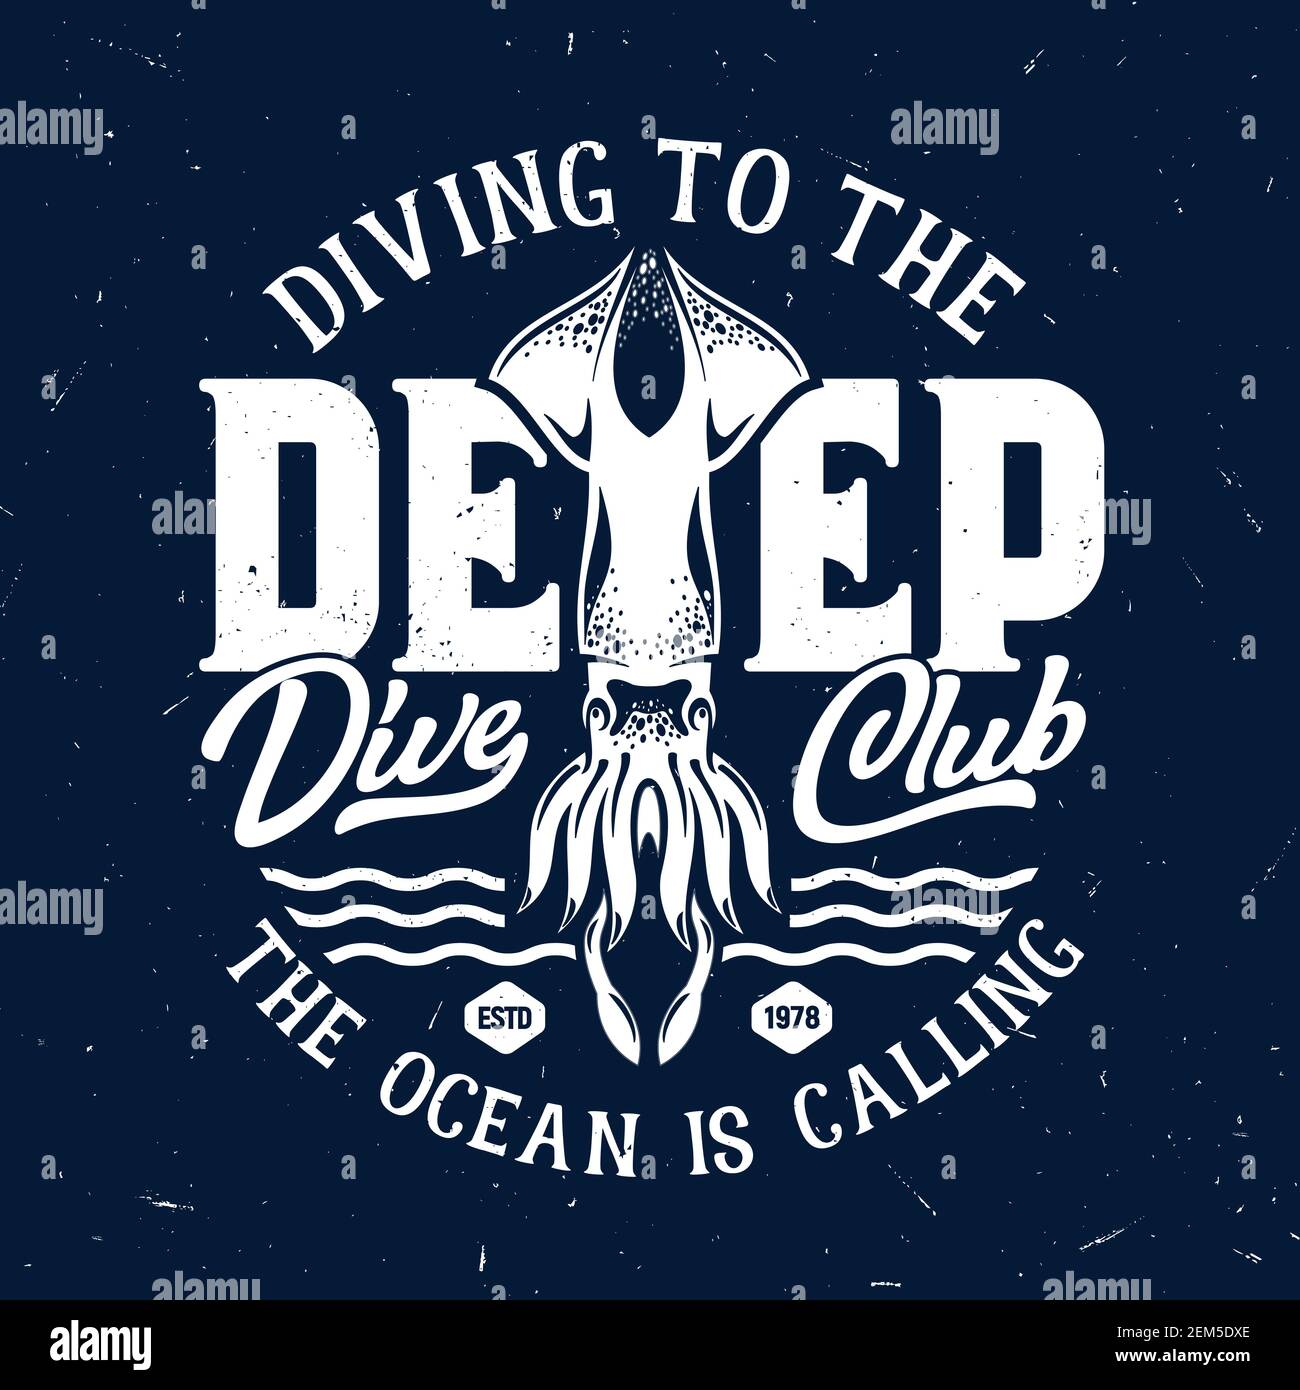 Stampa T-shirt con calamari per scuba diving club, modello grunge con mascotte calamario oceanico, tipografia bianca su fondo blu profondo. Sport subacqueo c Illustrazione Vettoriale